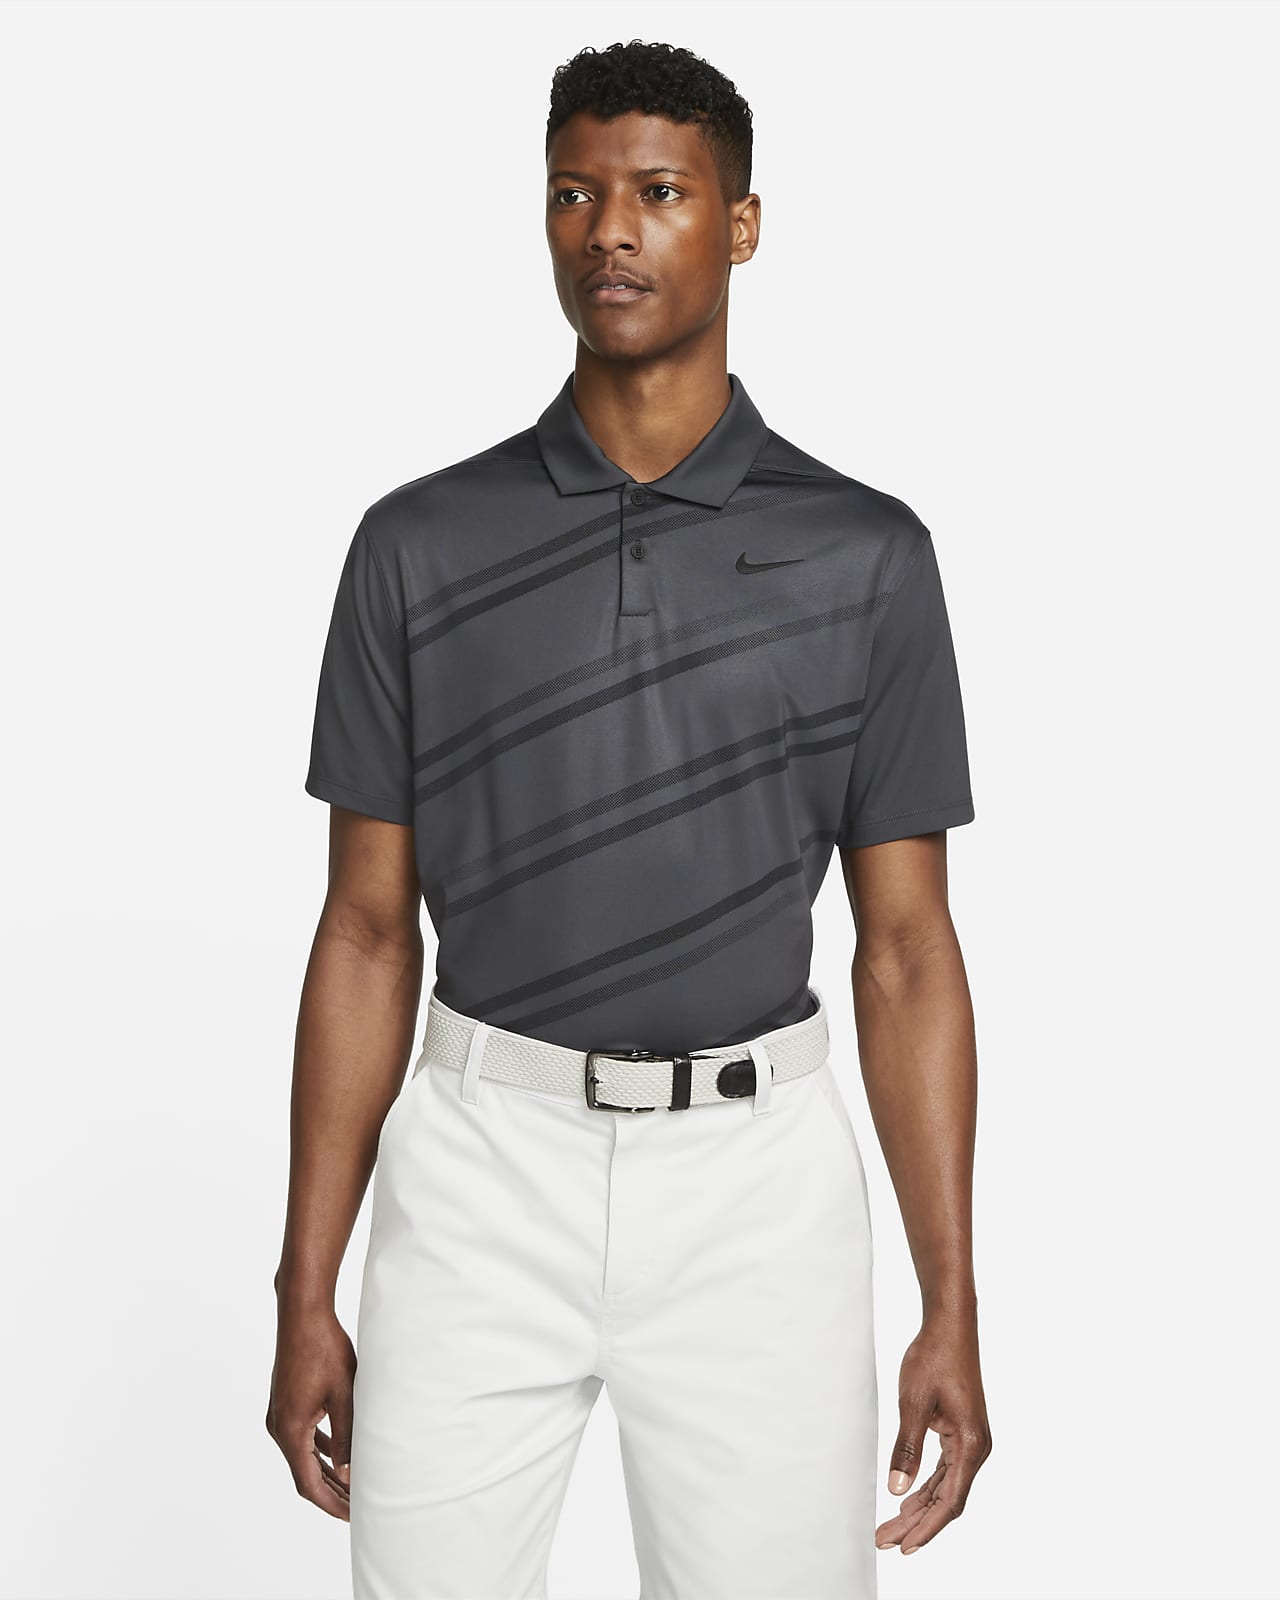 Nike Dri-FIT Vapor mintás férfi golfpóló